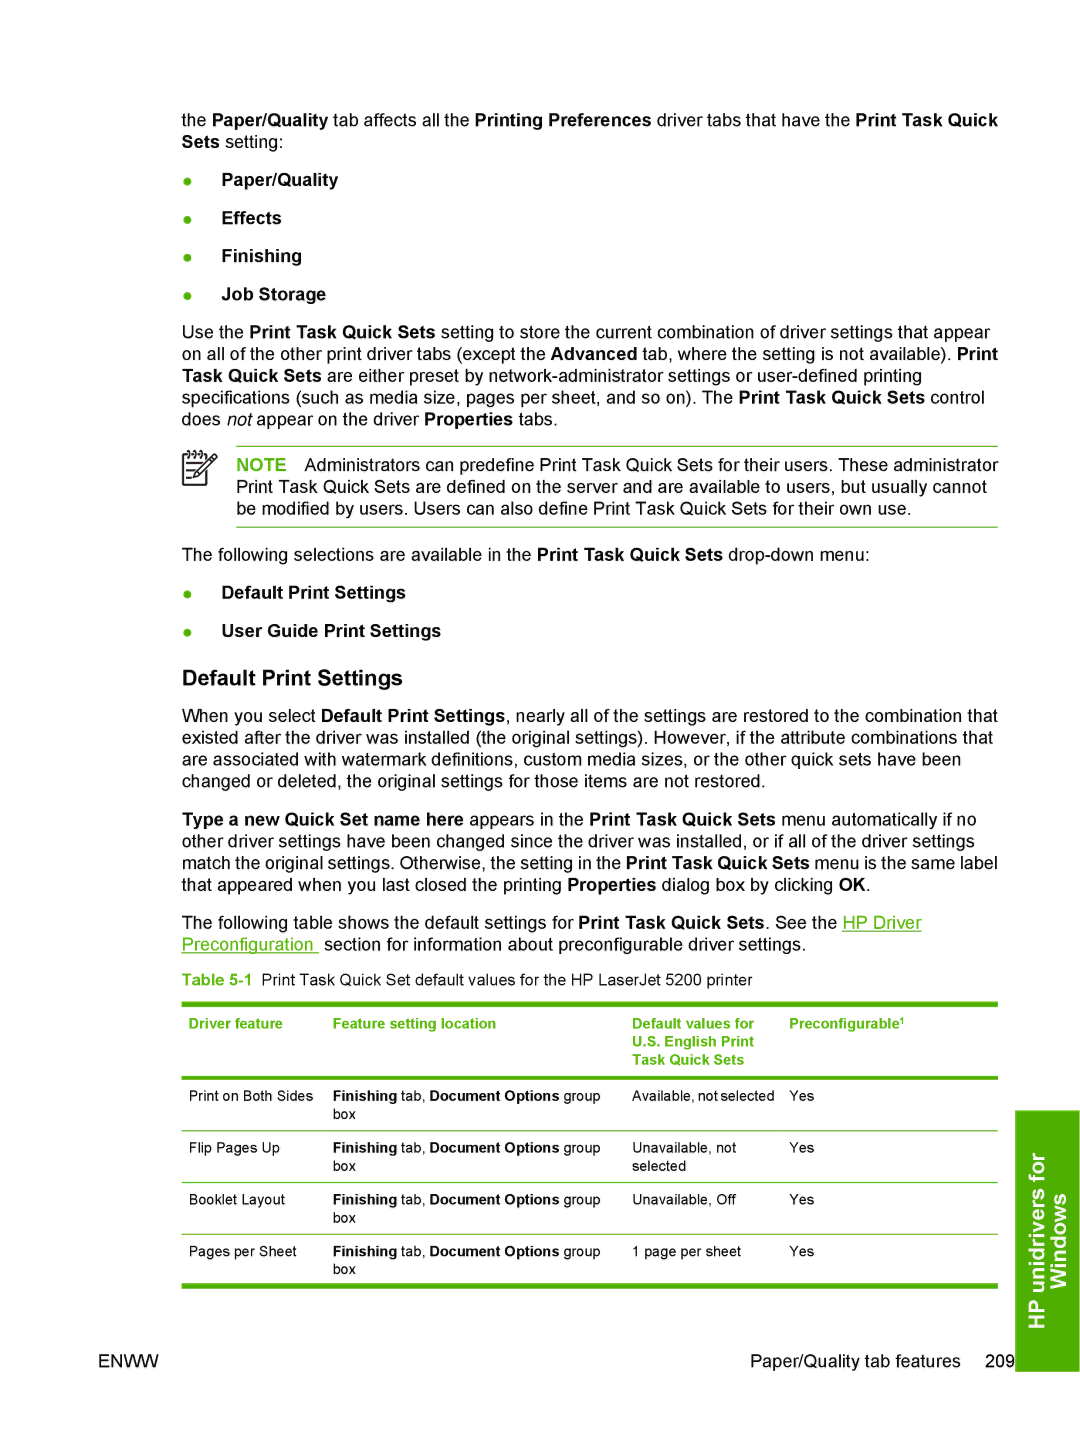 HP 5200L manual Default Print Settings User Guide Print Settings 